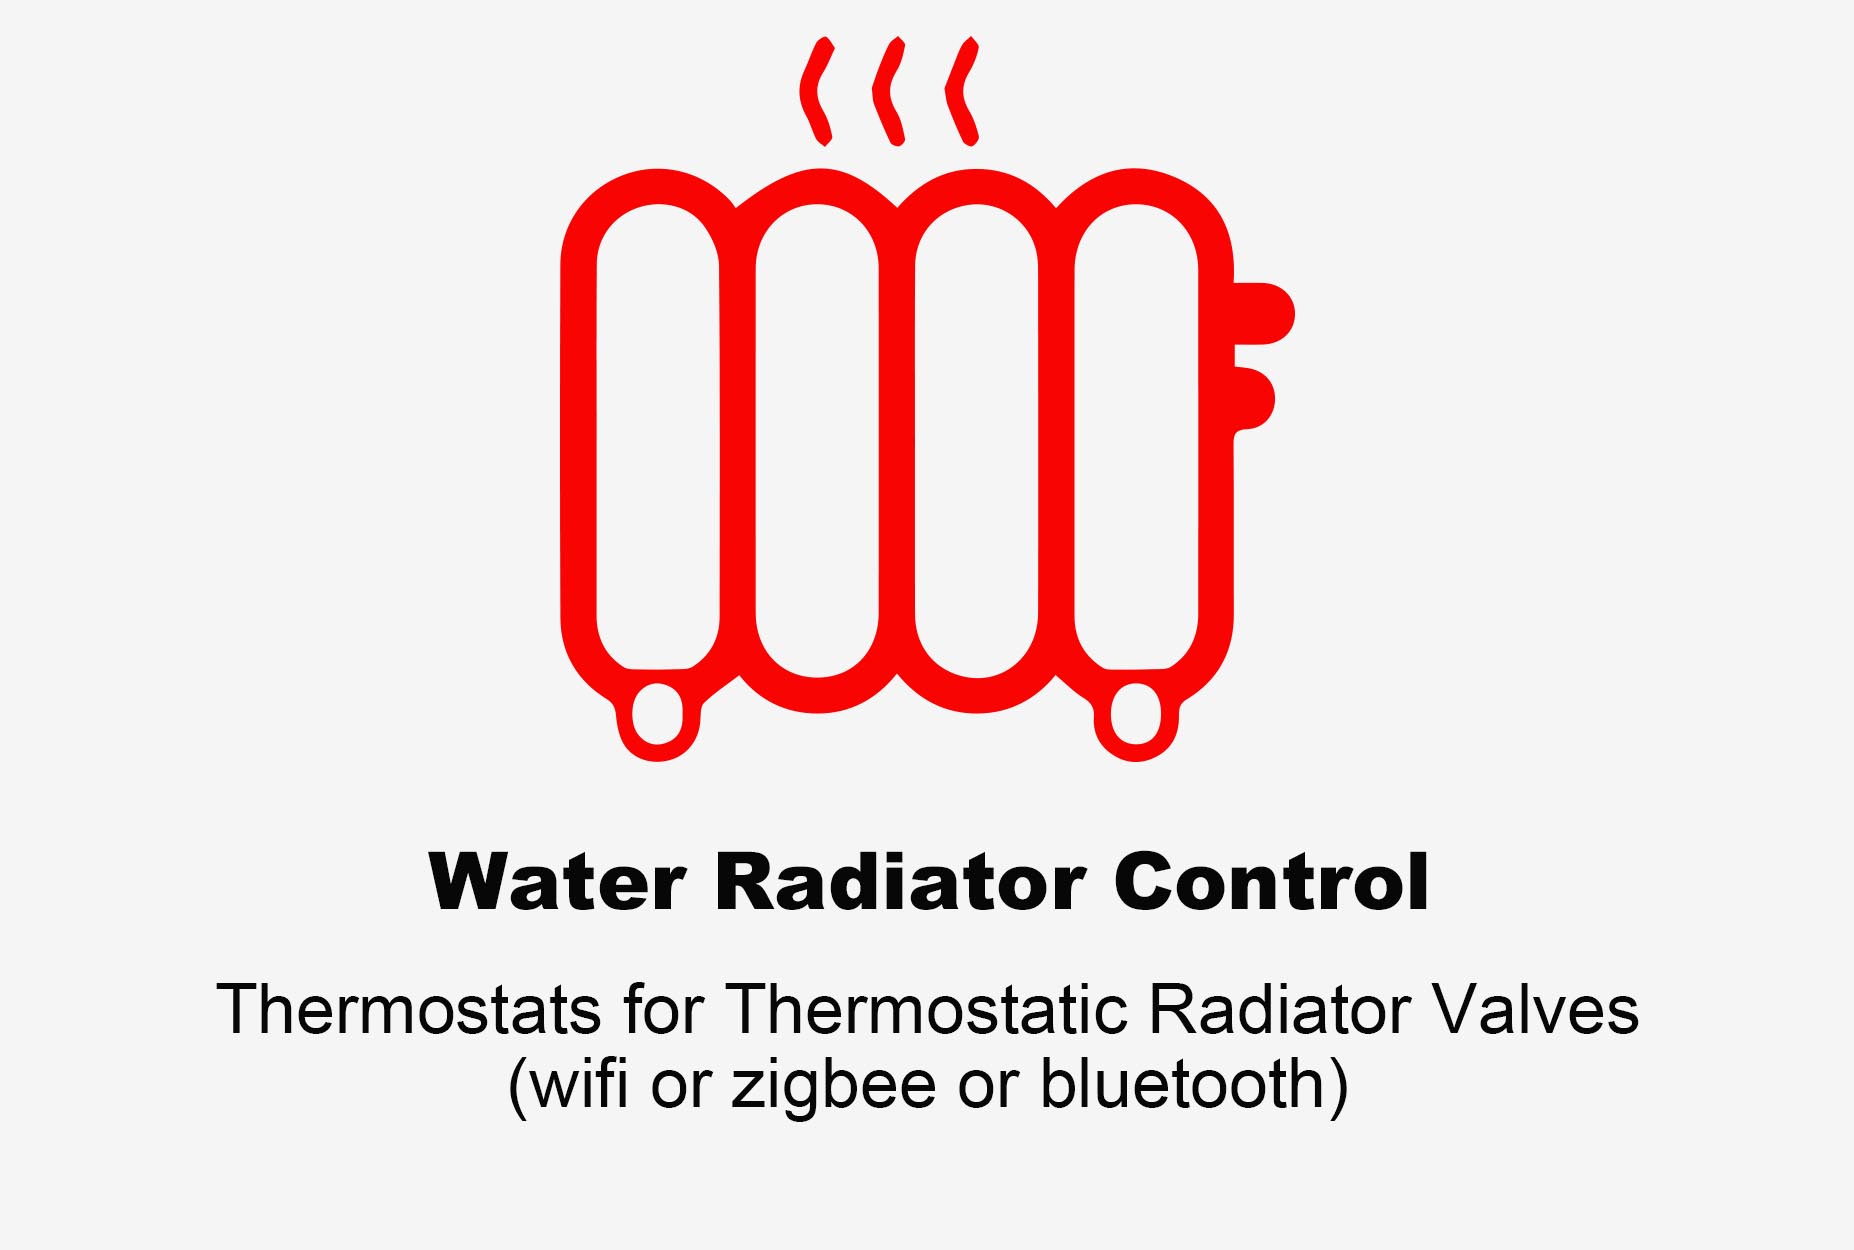 Termostato de radiador de agua, termostato Bluetooth, termostato de radiador Zigbee, termostato de radiador Wifi